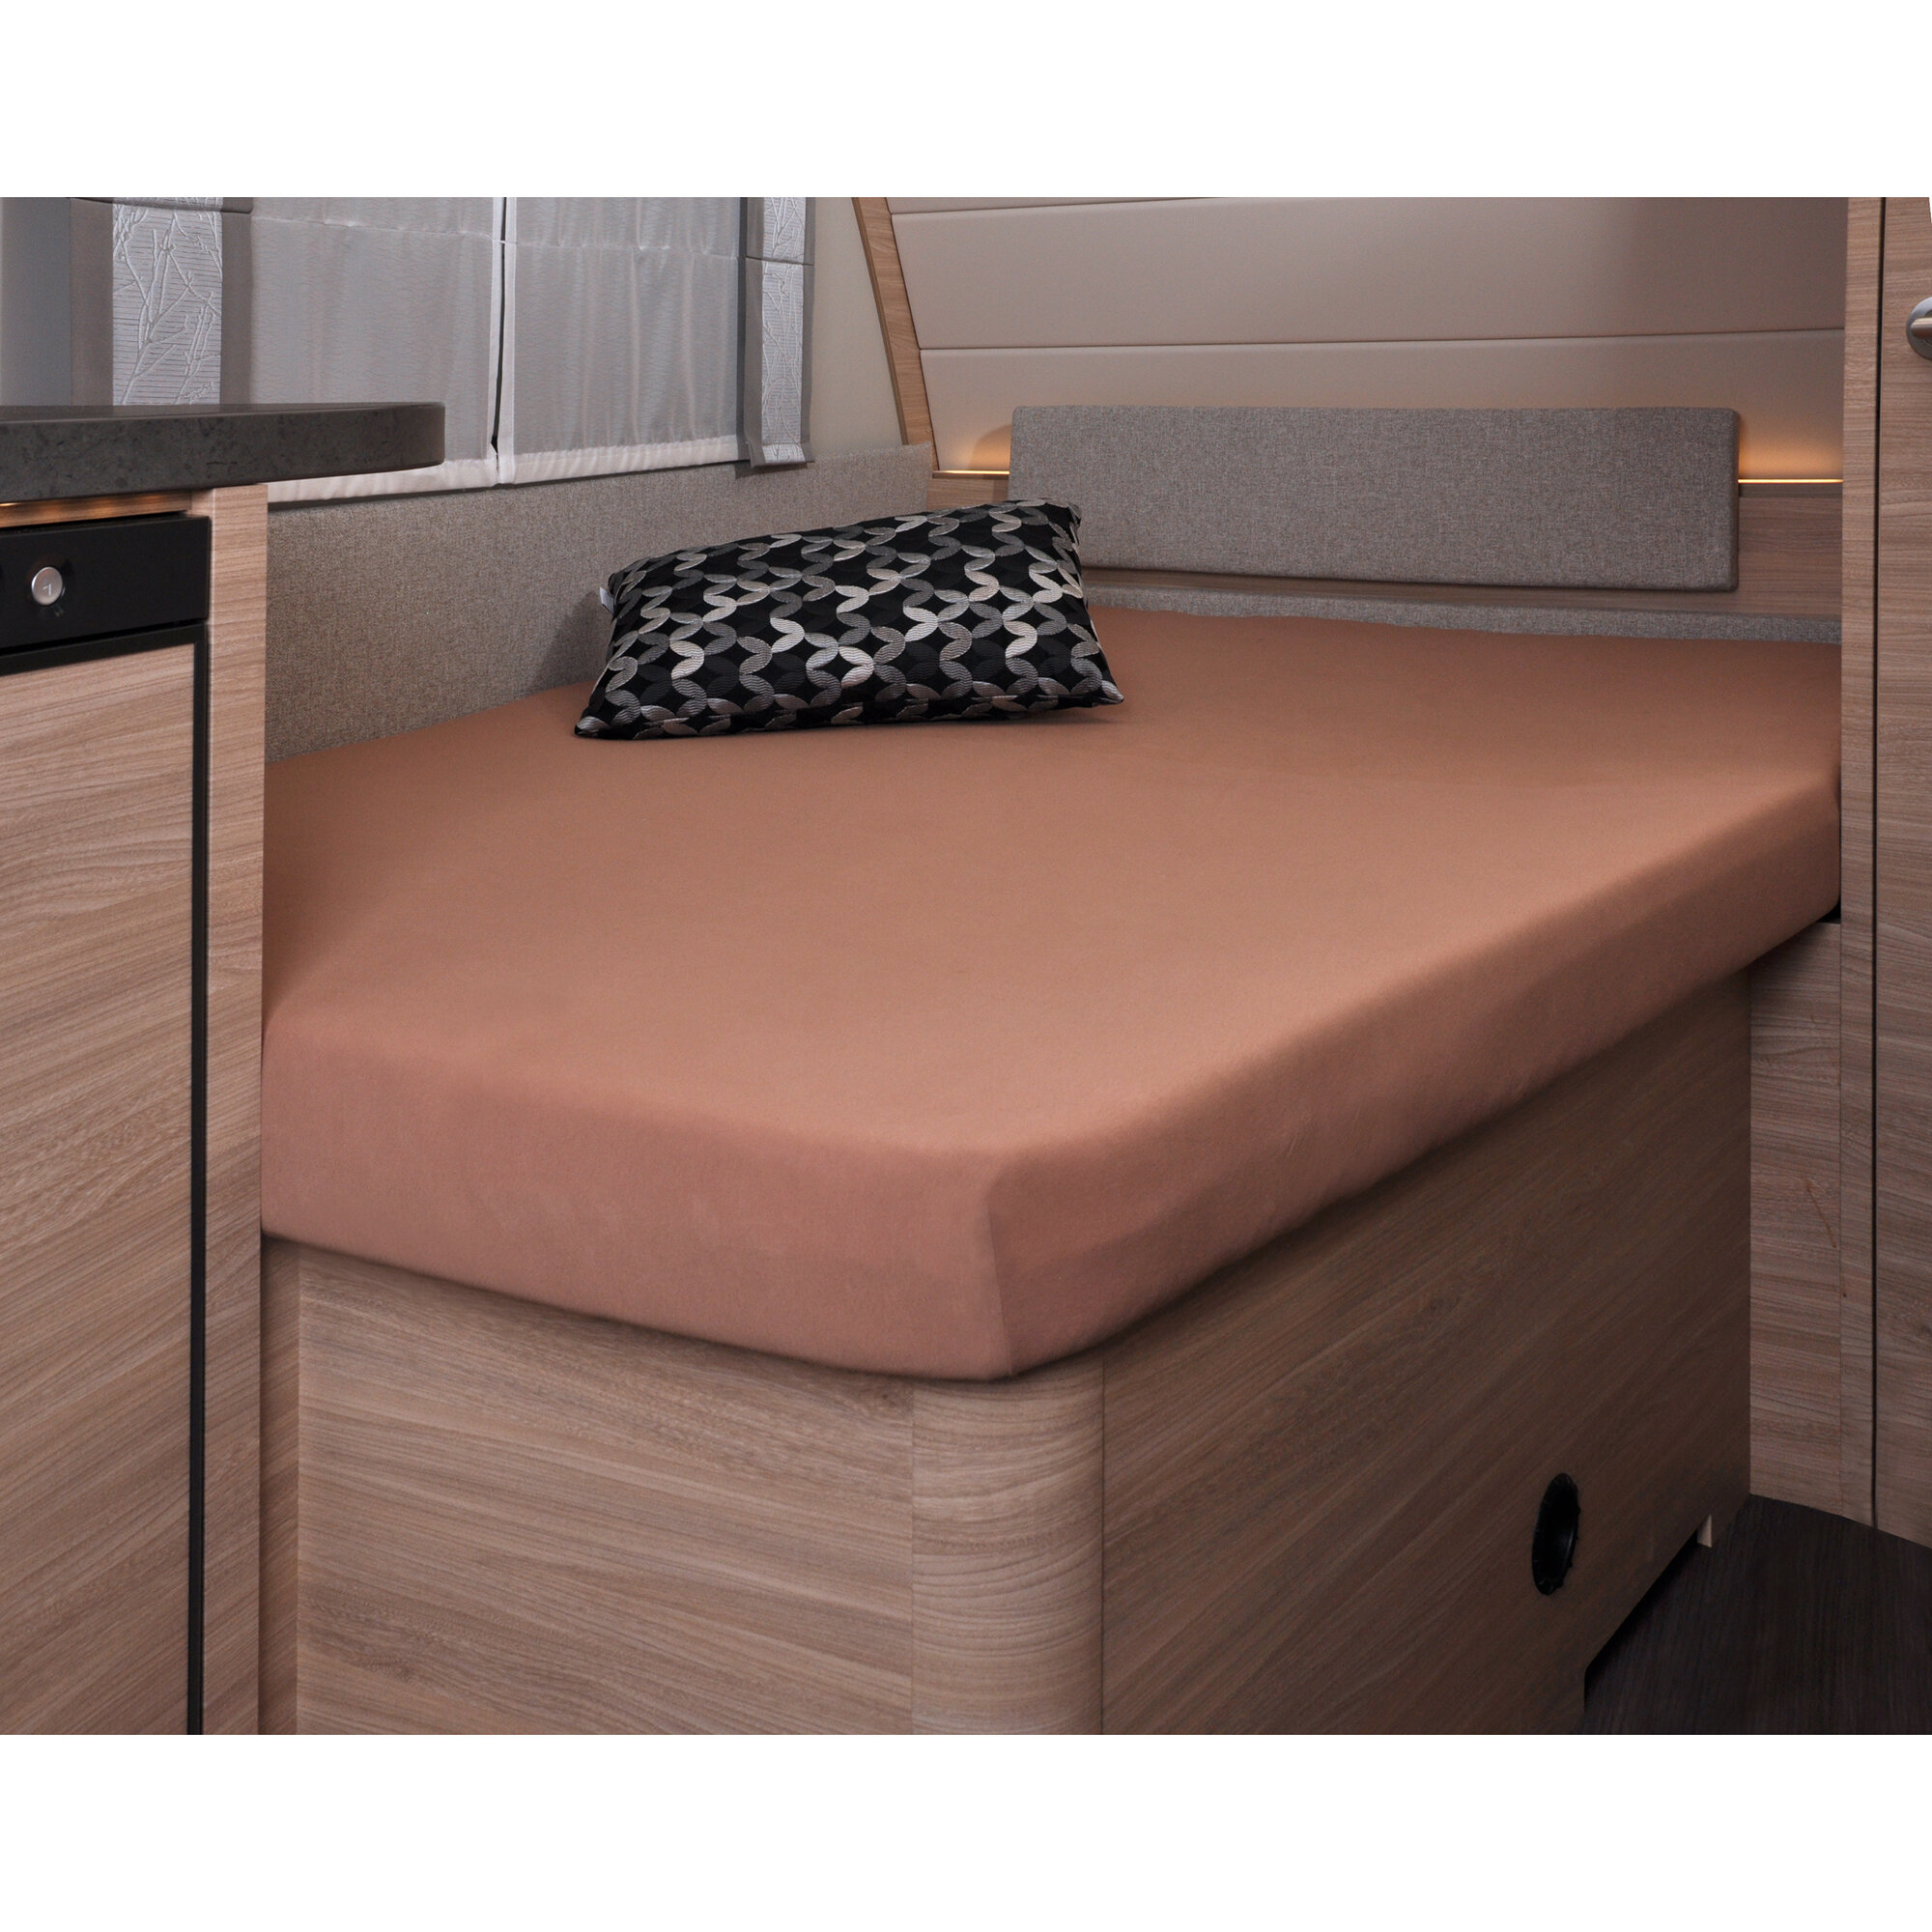 Spannbettlaken, 137 x 195 (110 / 90) cm für französisches Bett im Wohnwagen